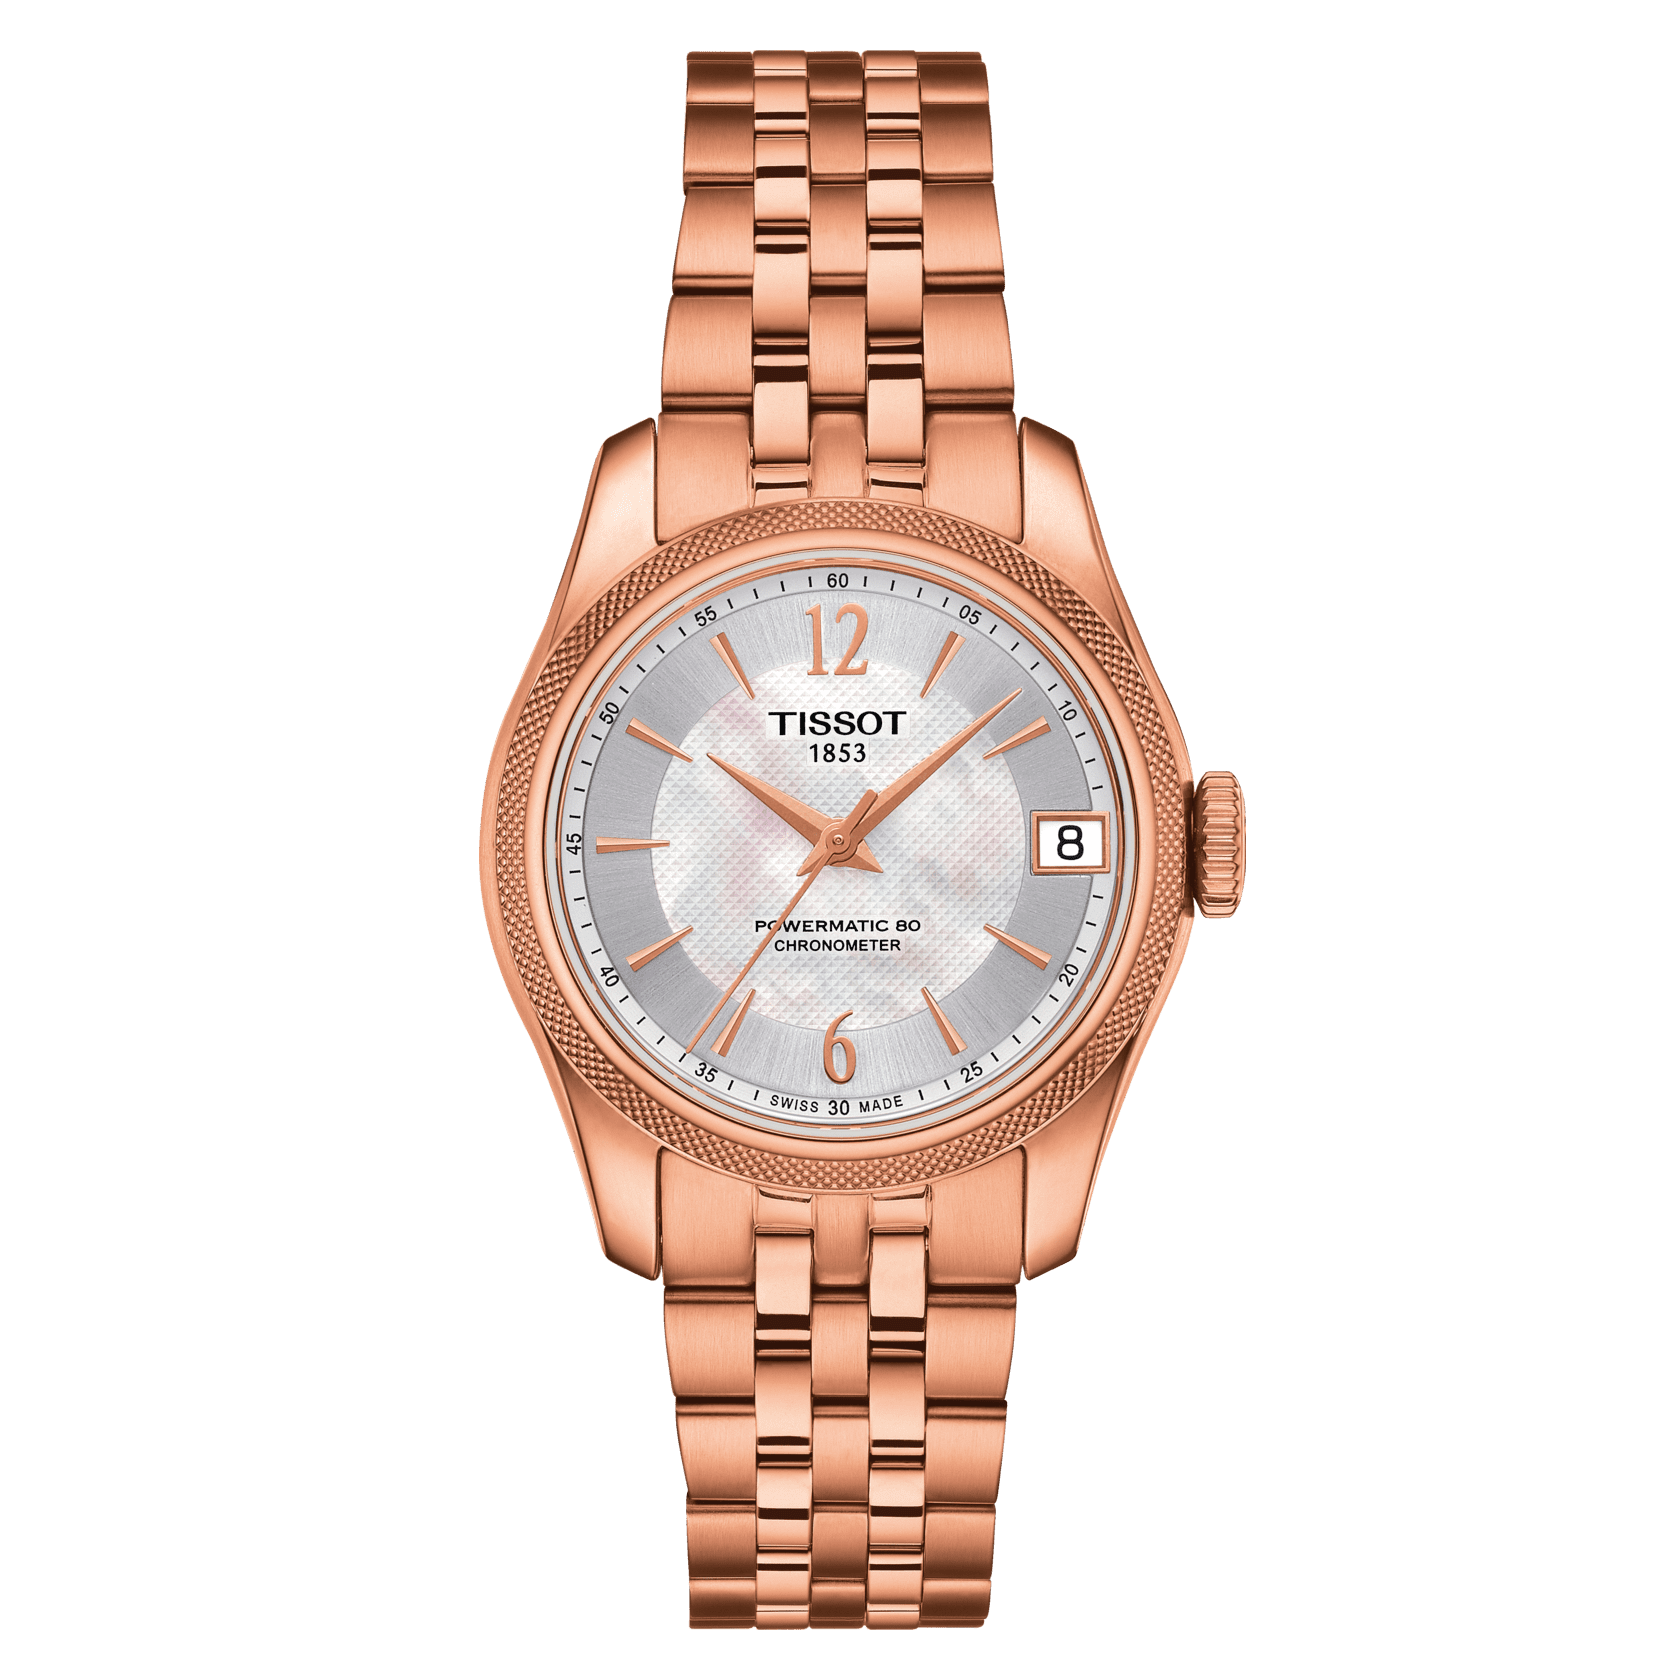 Cheap Replica Rolex Watch